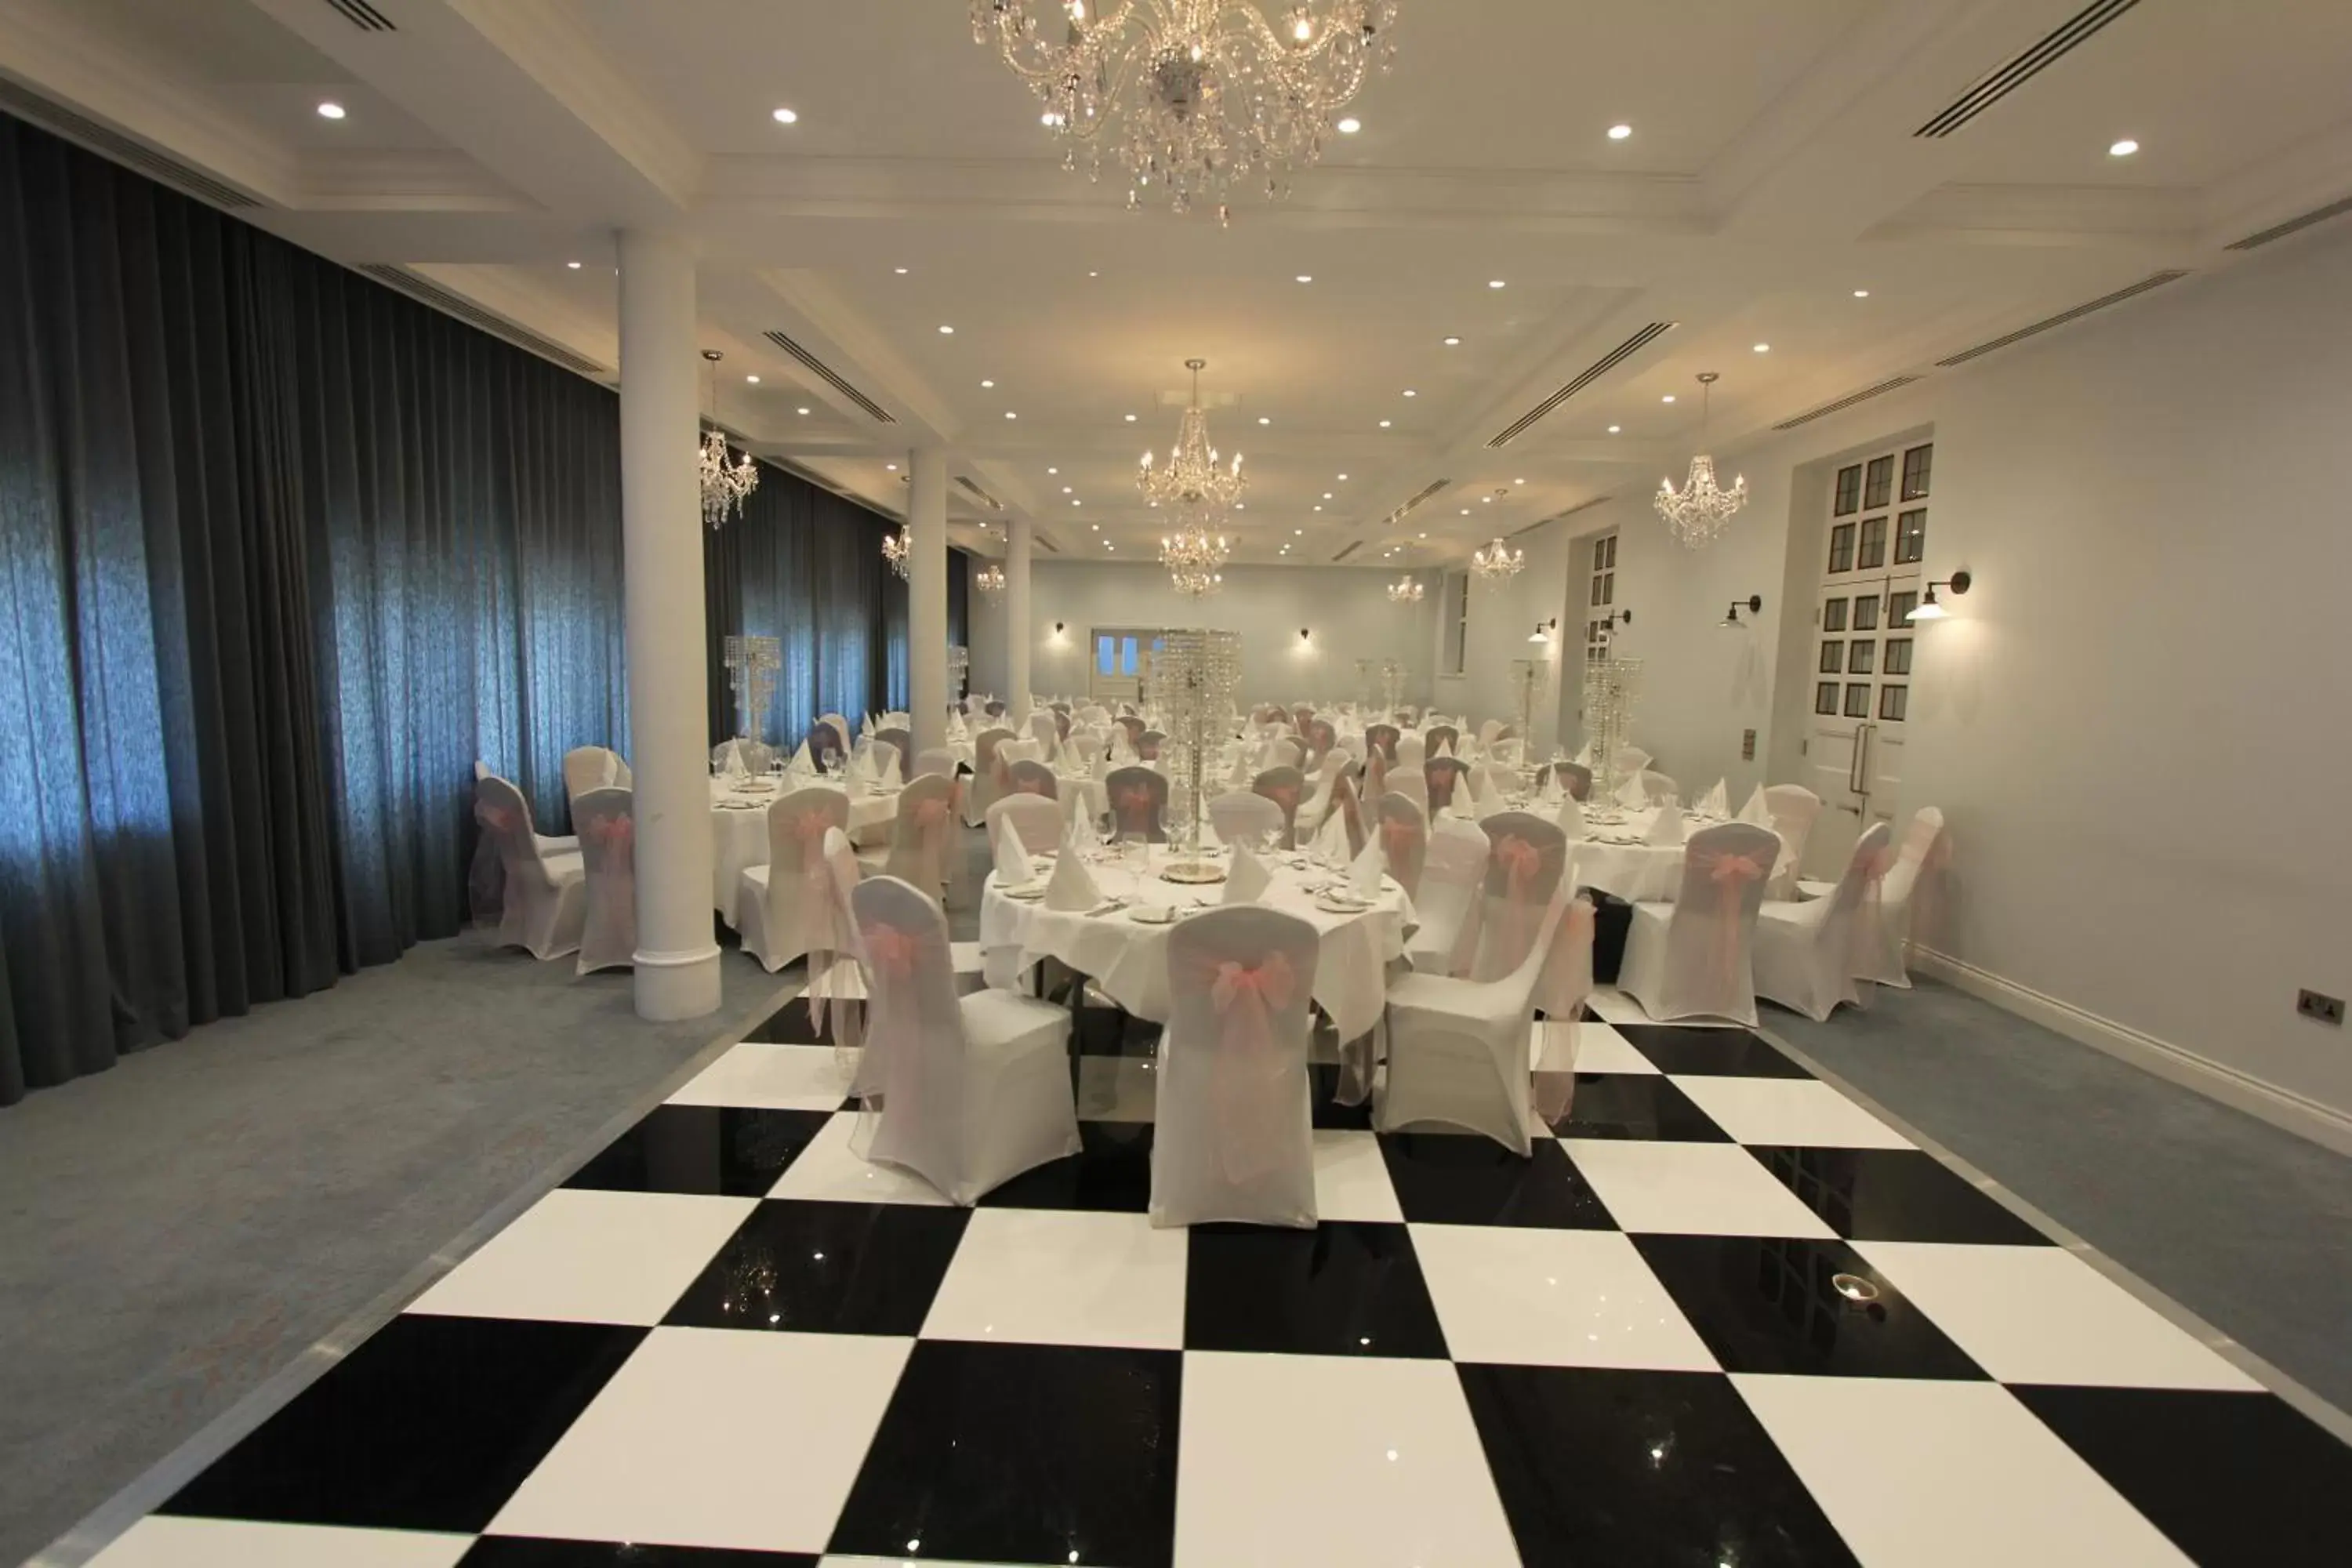 Banquet/Function facilities, Banquet Facilities in Yarrow Hotel